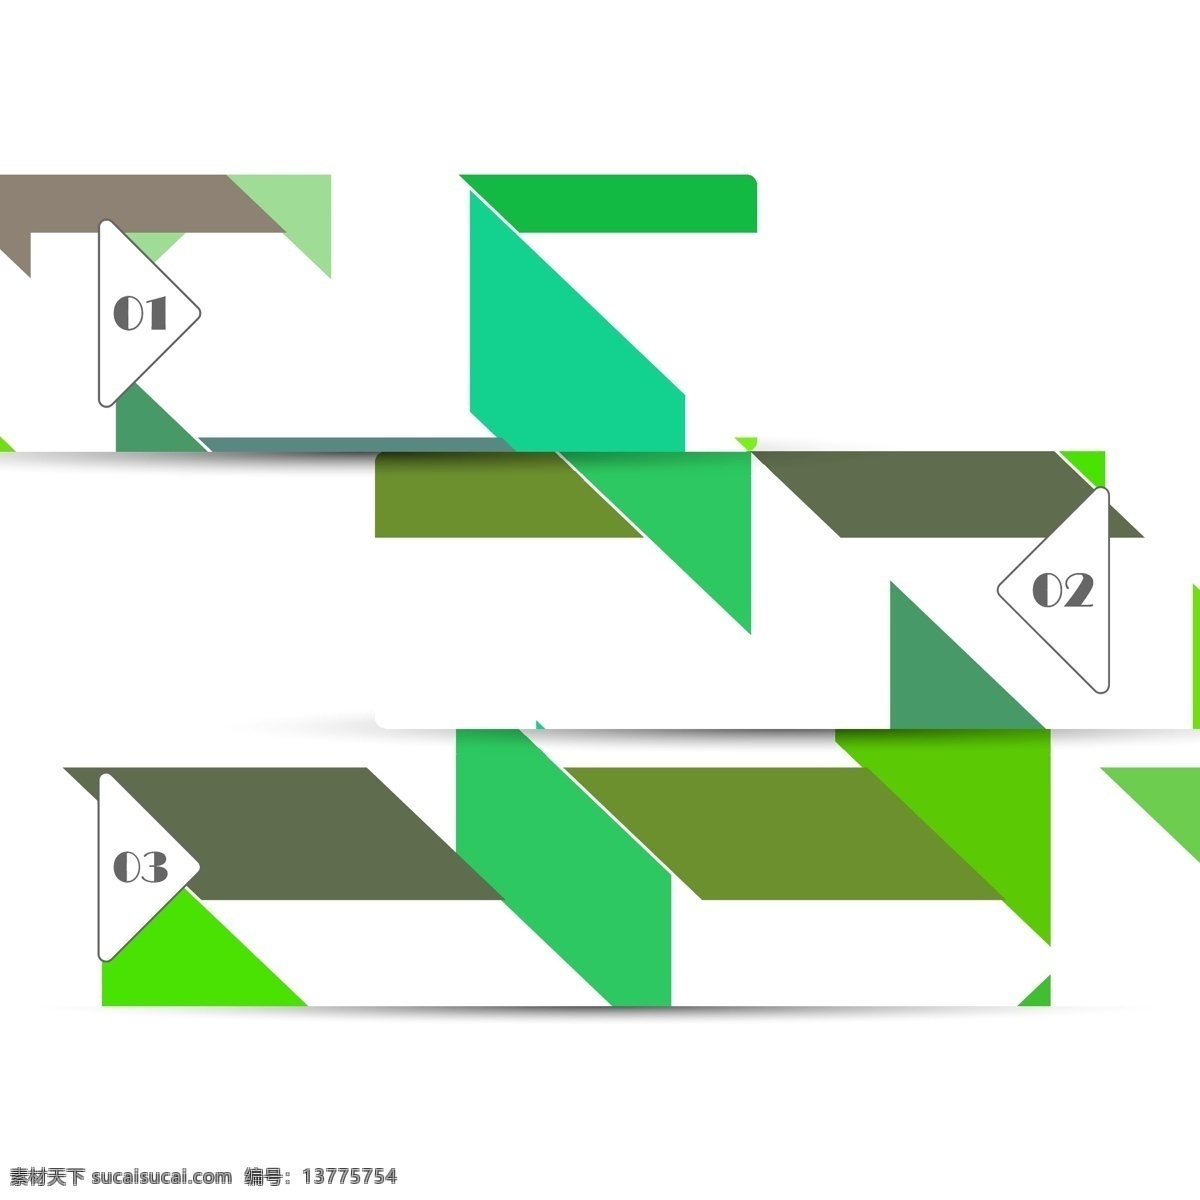 彩色 几何 图案 横幅 广告 模版 几何图形 绿色 模板 矢量 矢量图 其他矢量图